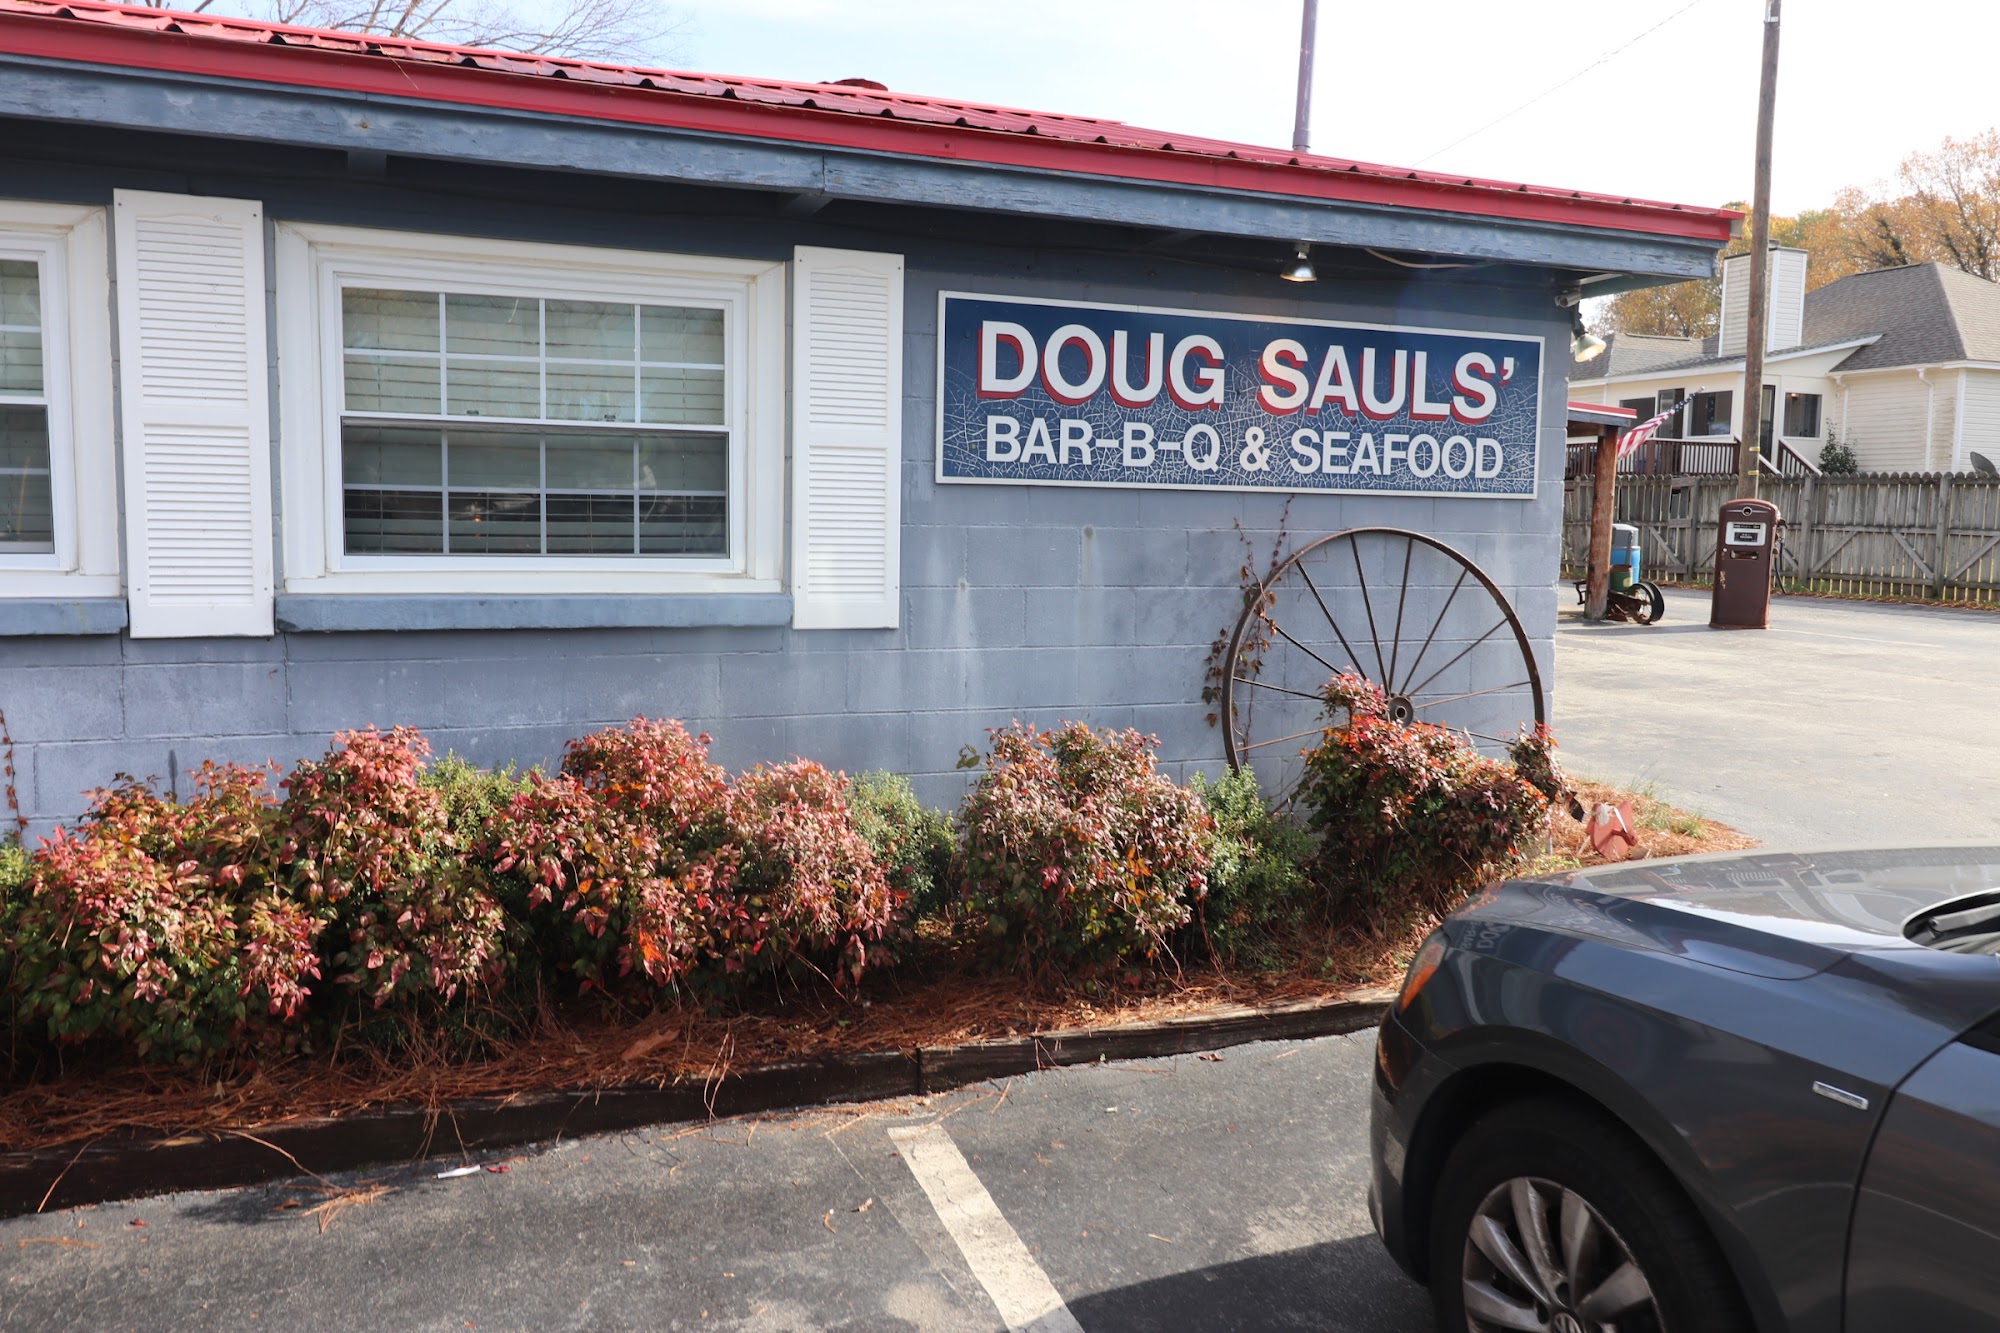 Doug Sauls BBQ and Seafood